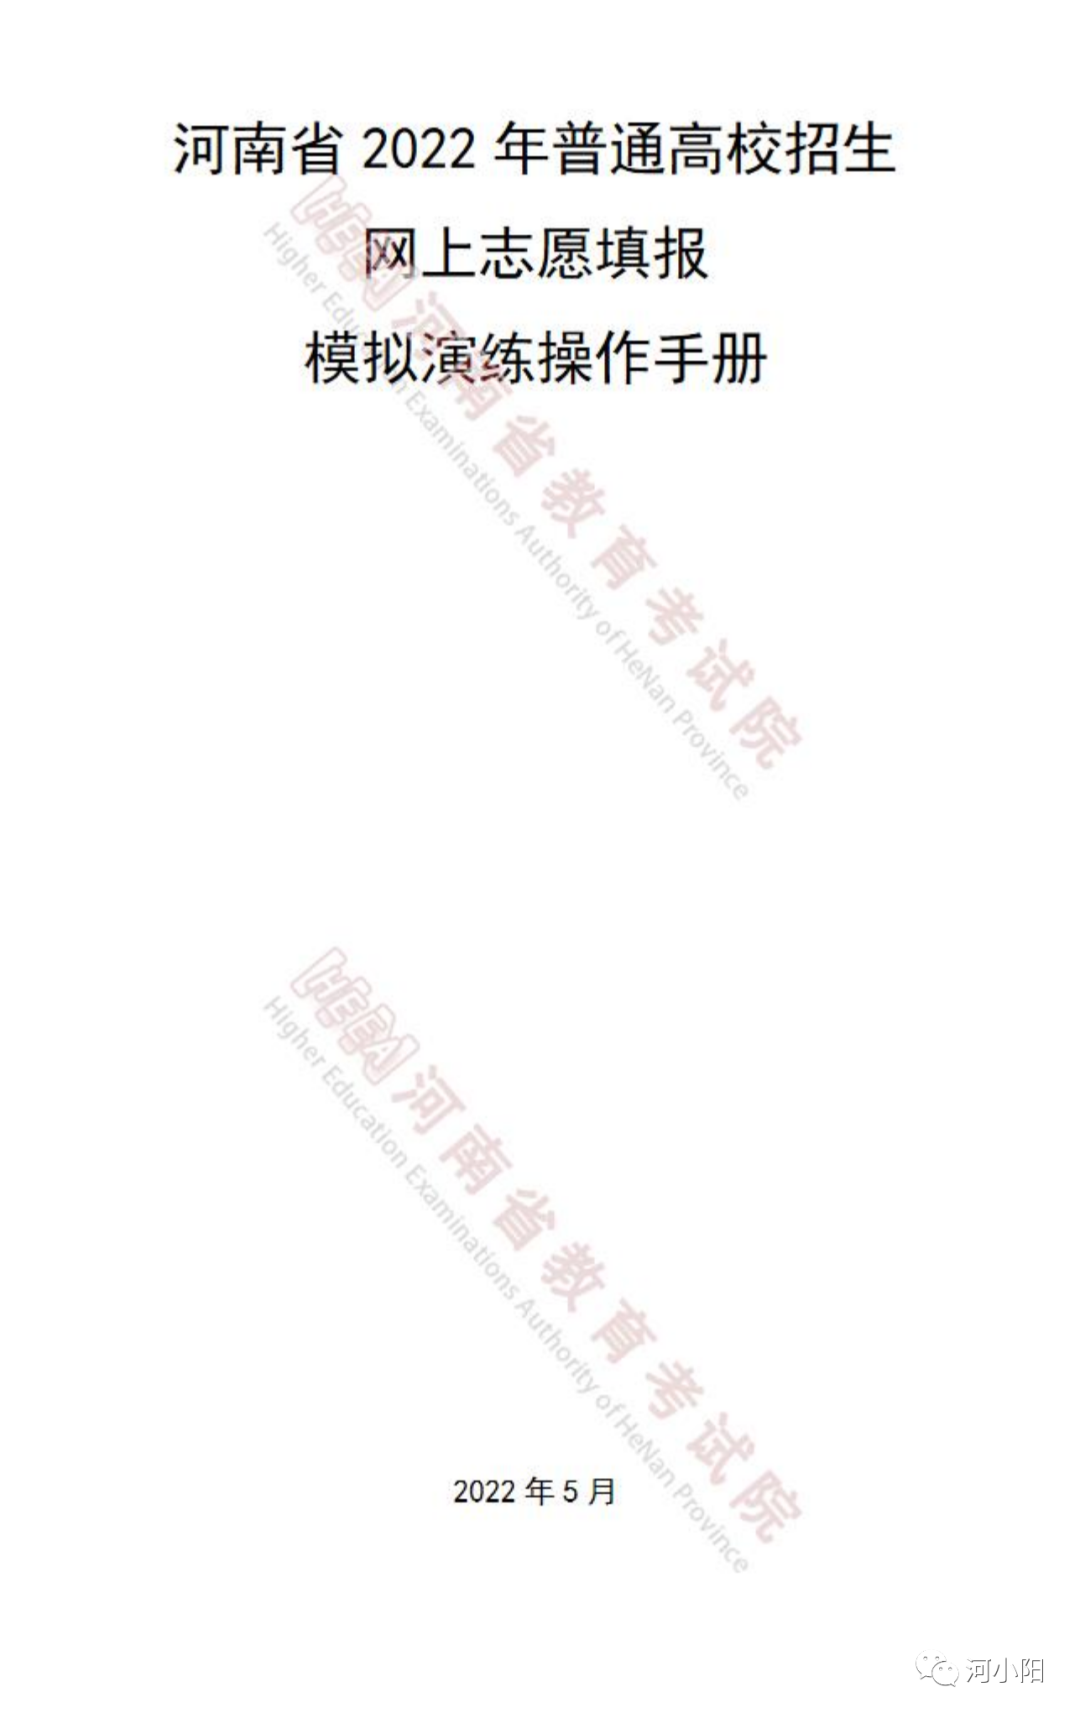 2022年河南高招网上志愿填报模拟演练操作手册发布